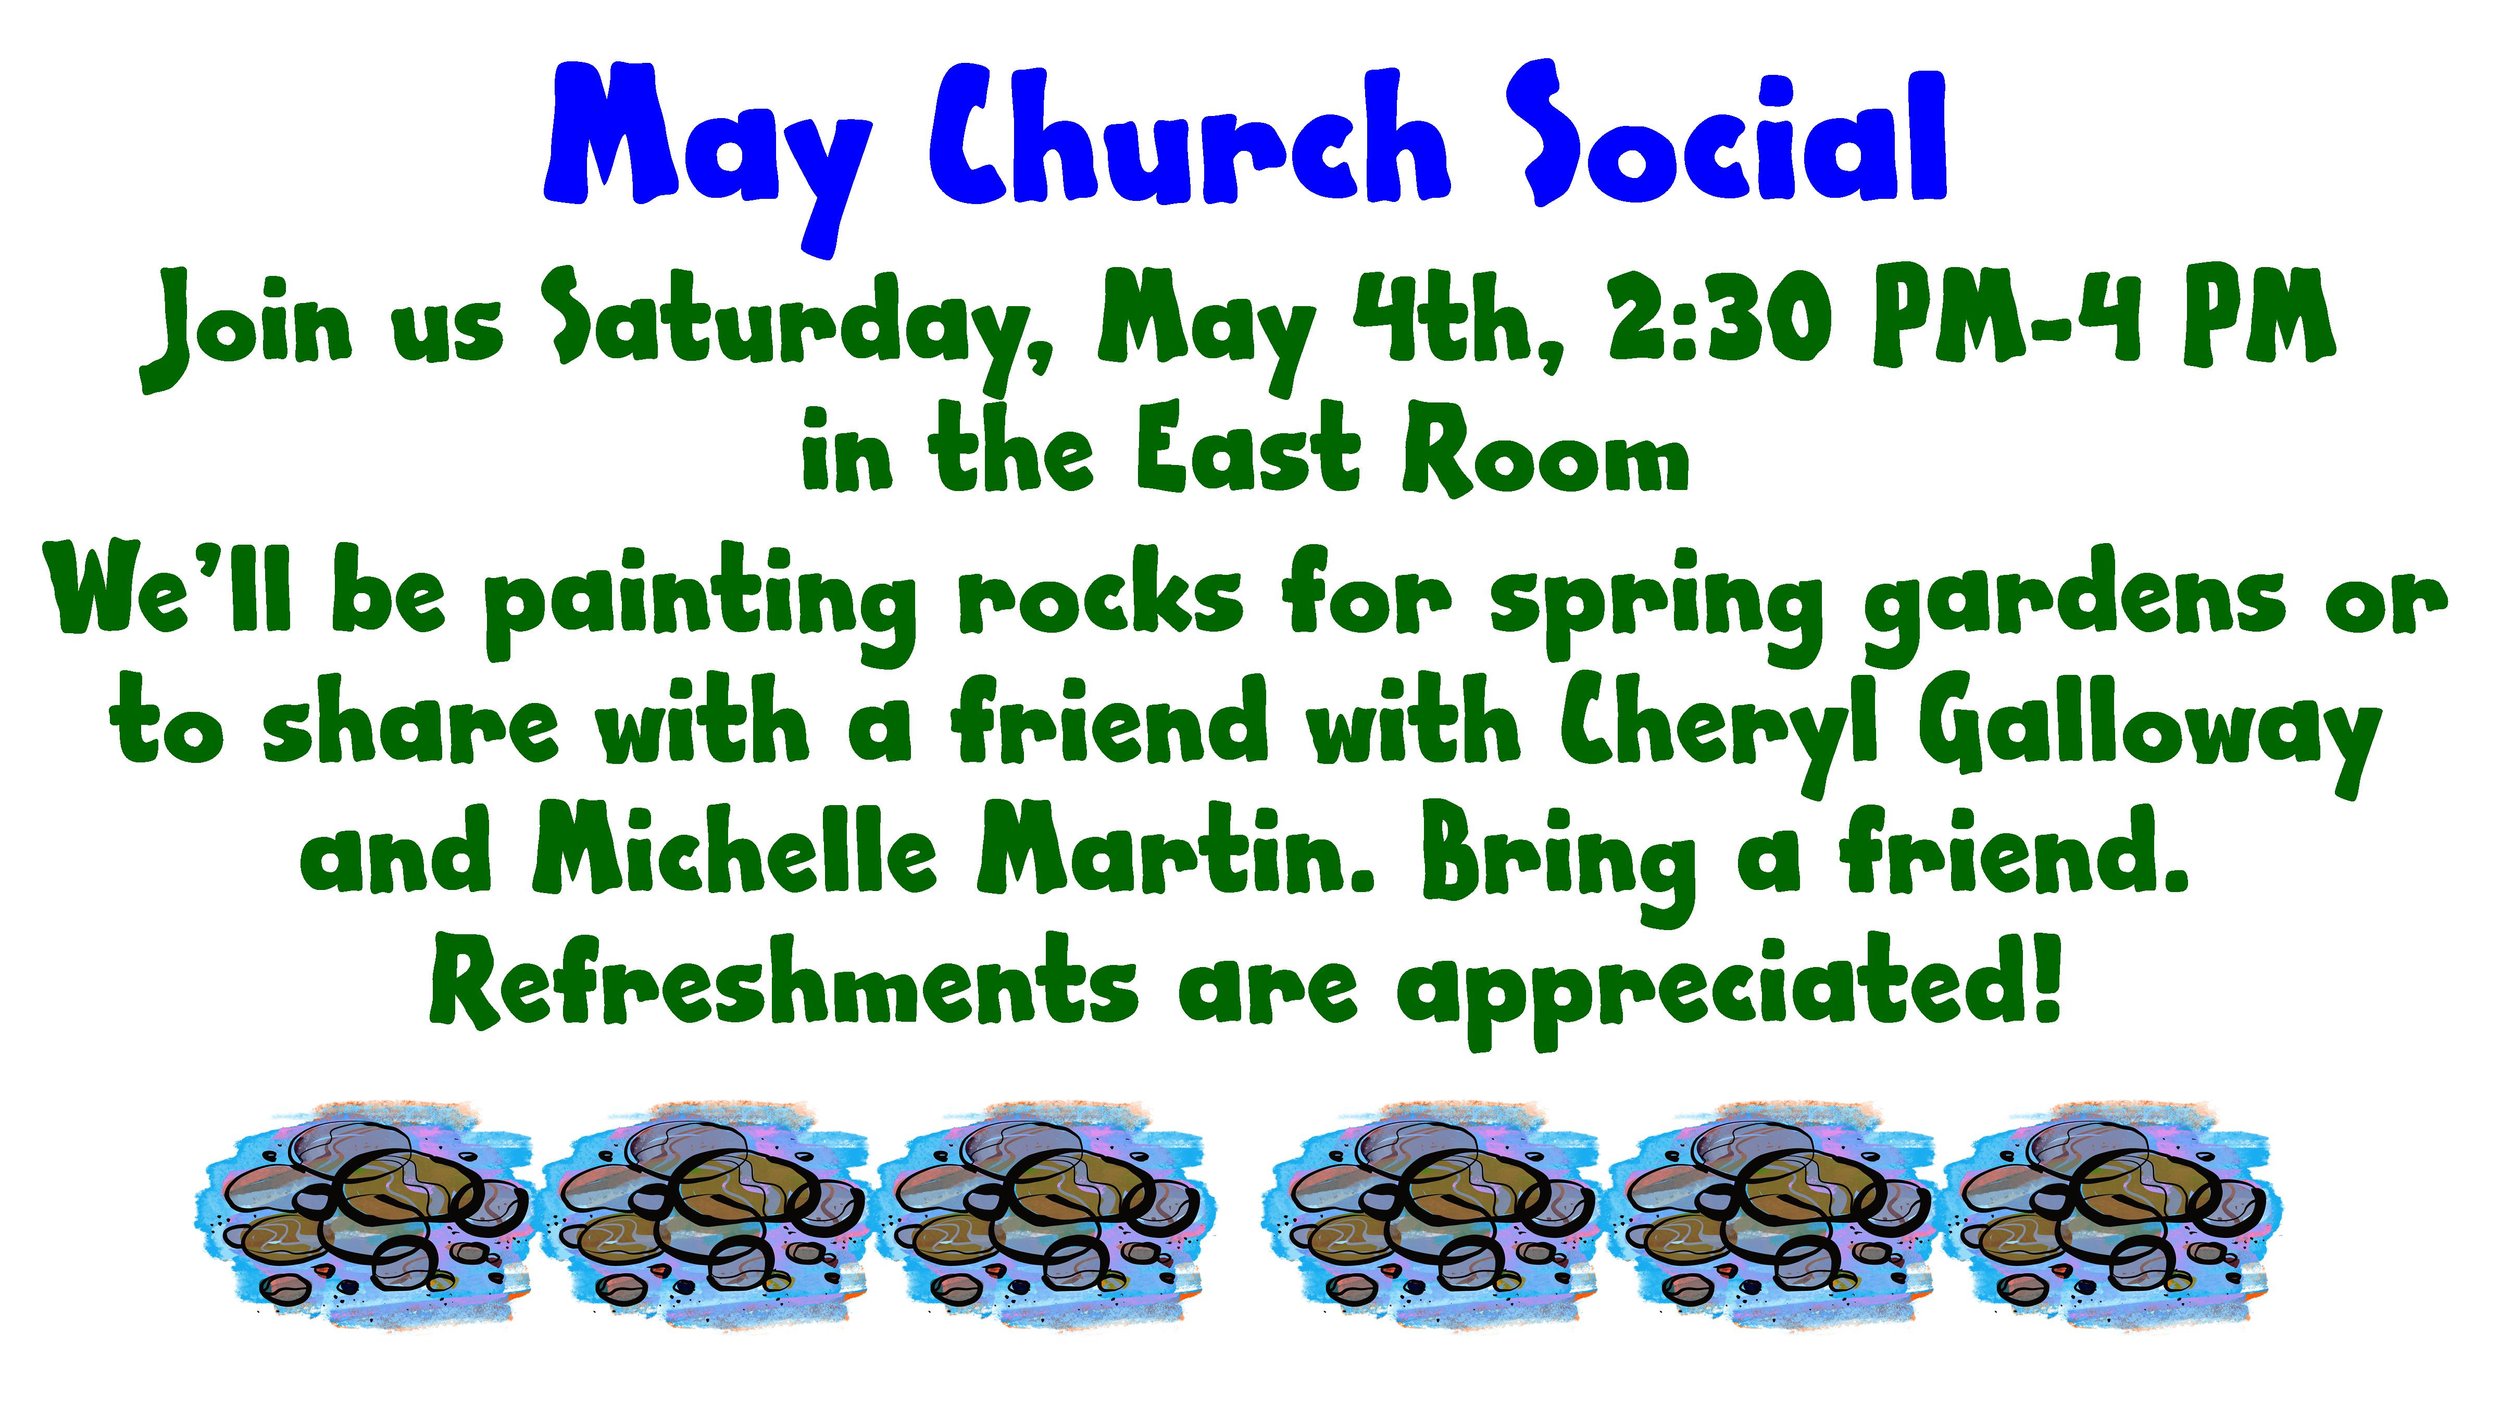 May Church Social 24 WS.jpg